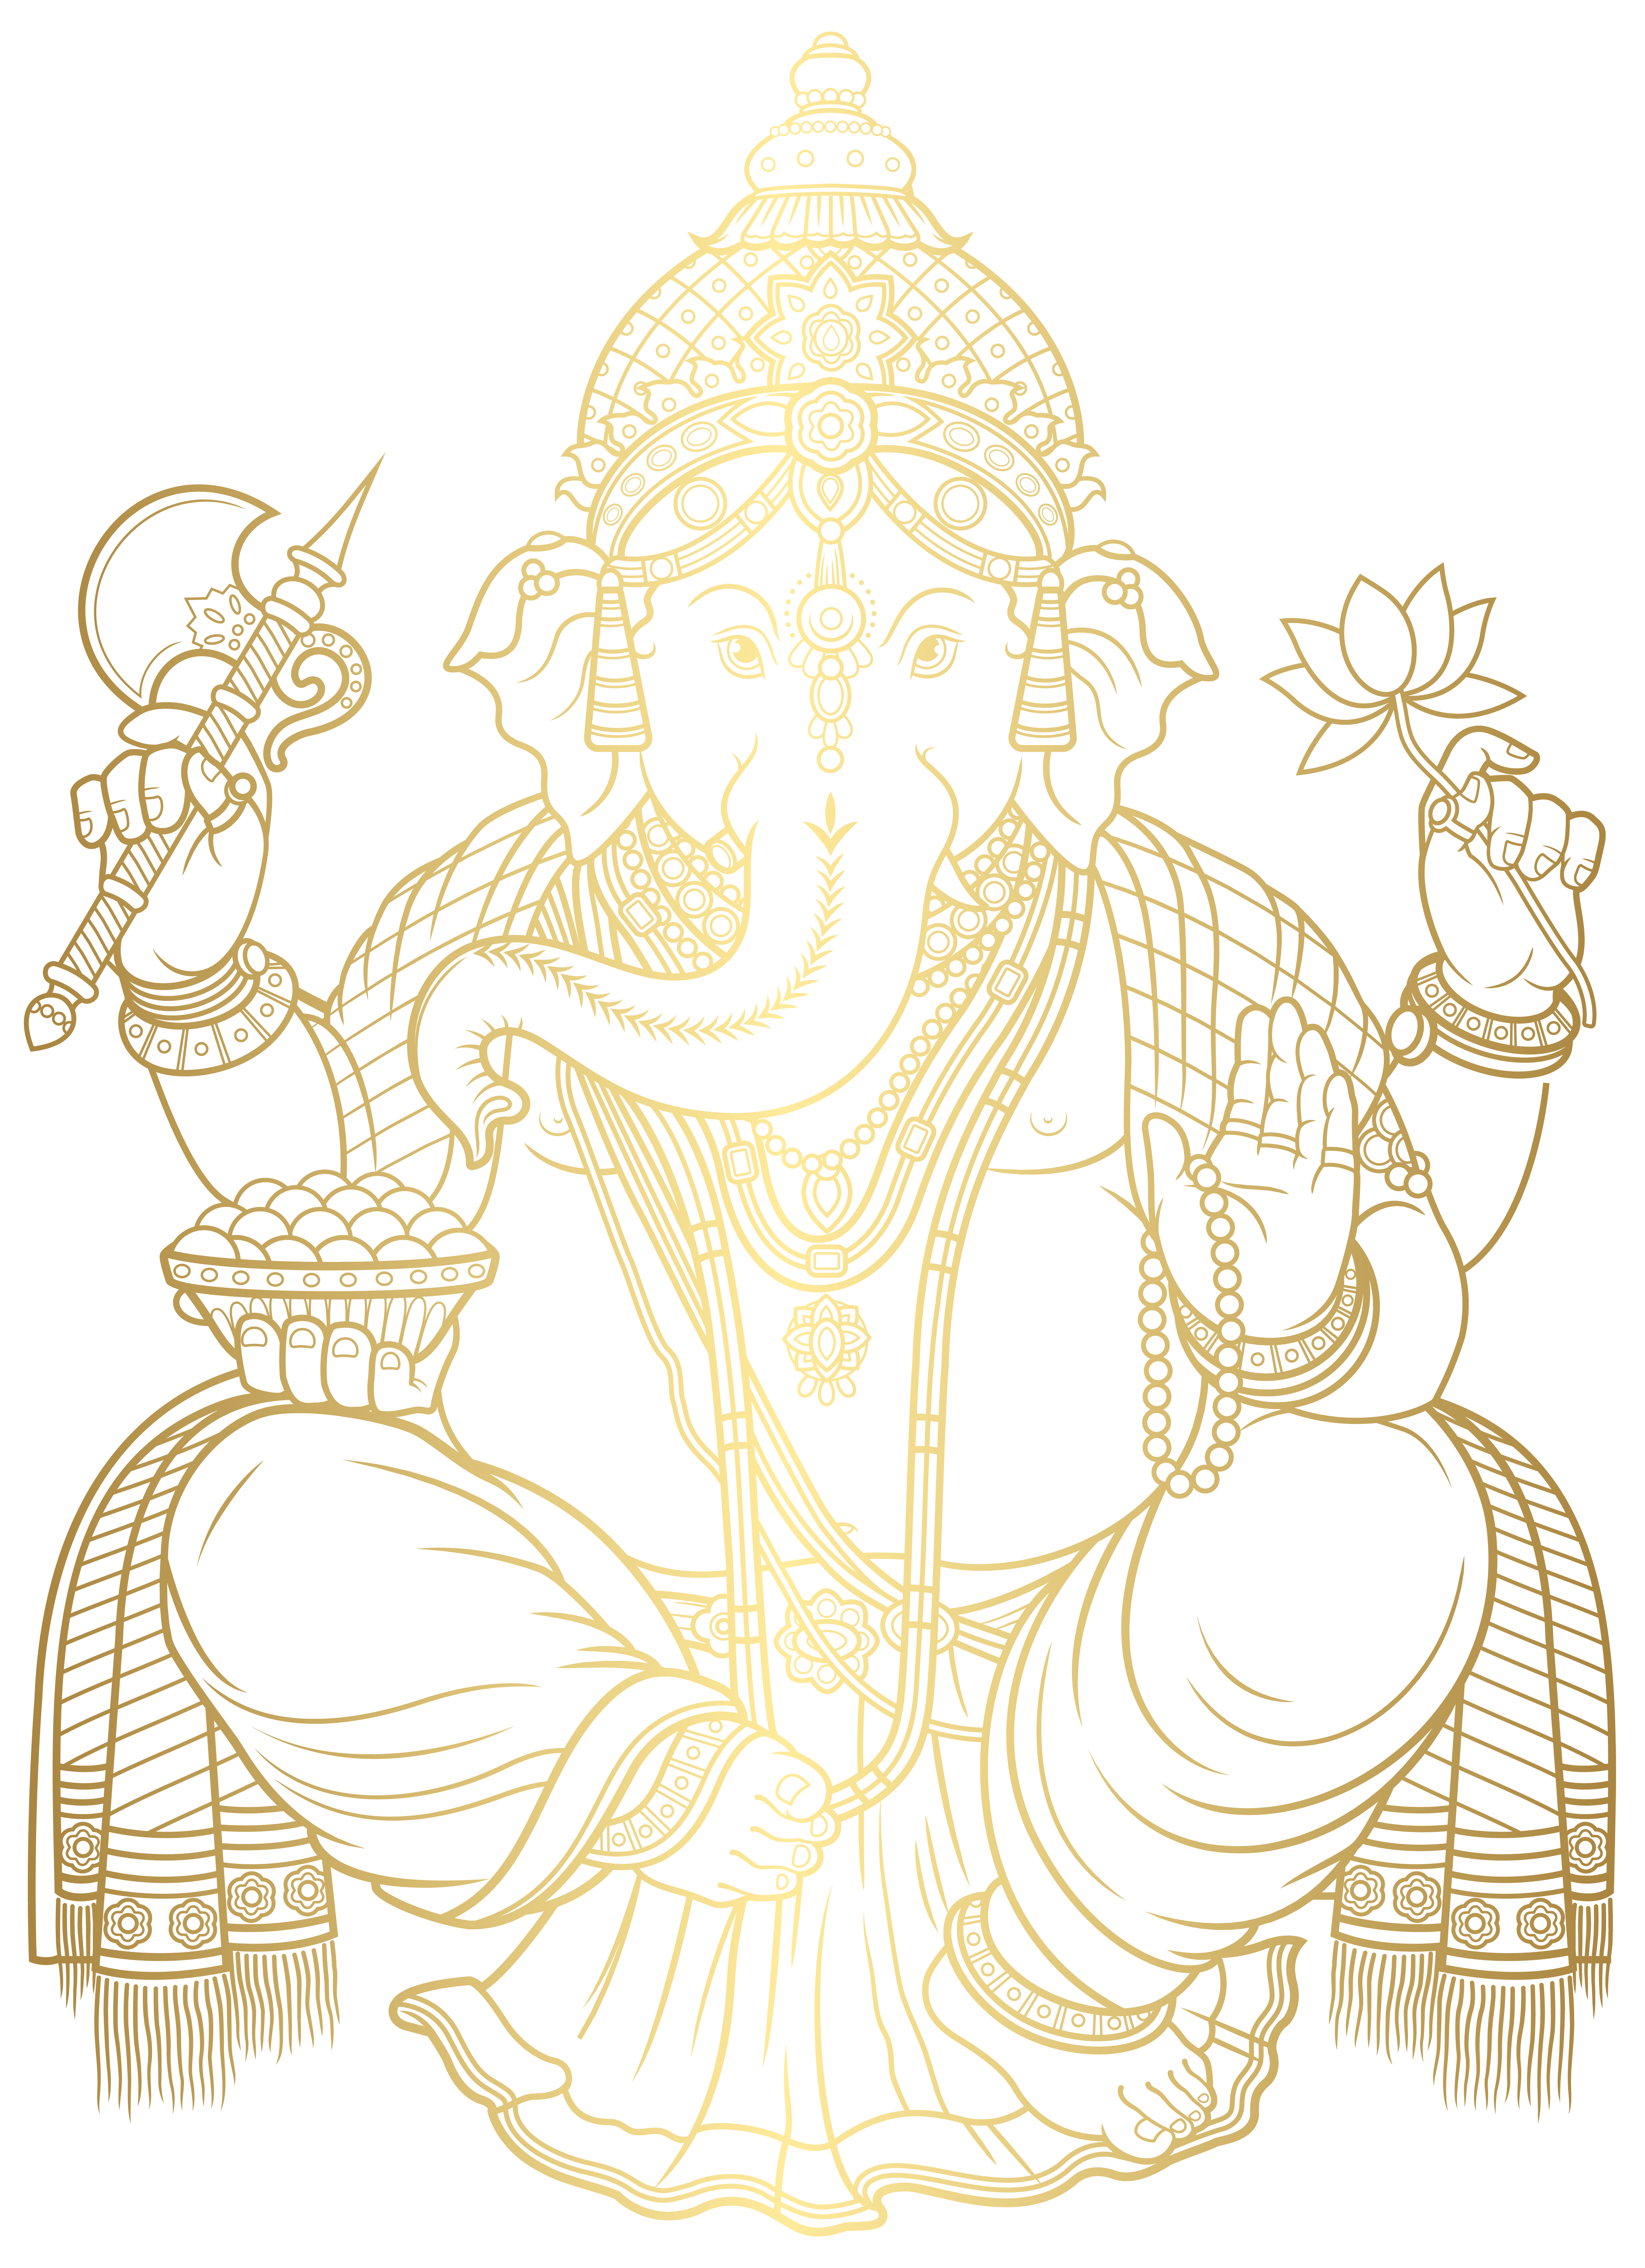 Clip art Ganesha Gold được chế tác trên nền vàng quý phái. Đây chắc chắn là một trong những hình ảnh đẹp nhất bạn từng thấy về vị thần ngài Ganesh.